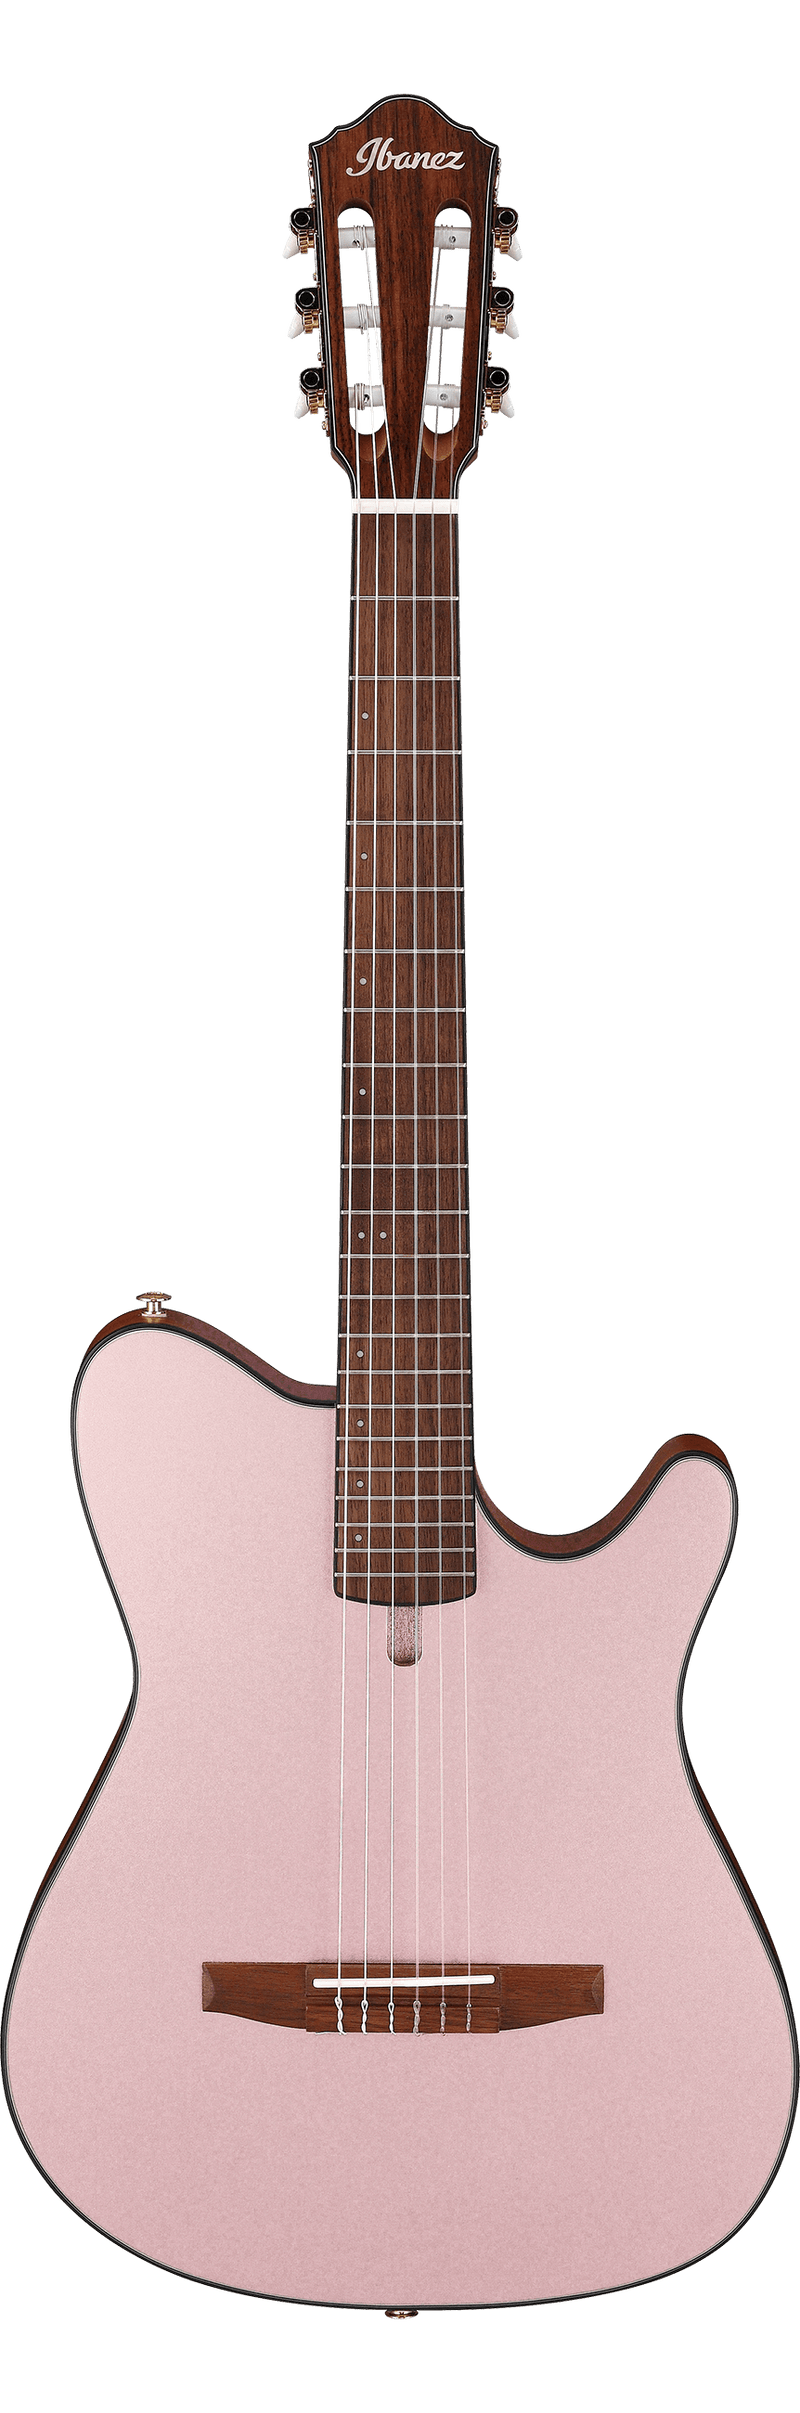 Guitare acoustique ibanez frh10n (plat métallique en or rose)